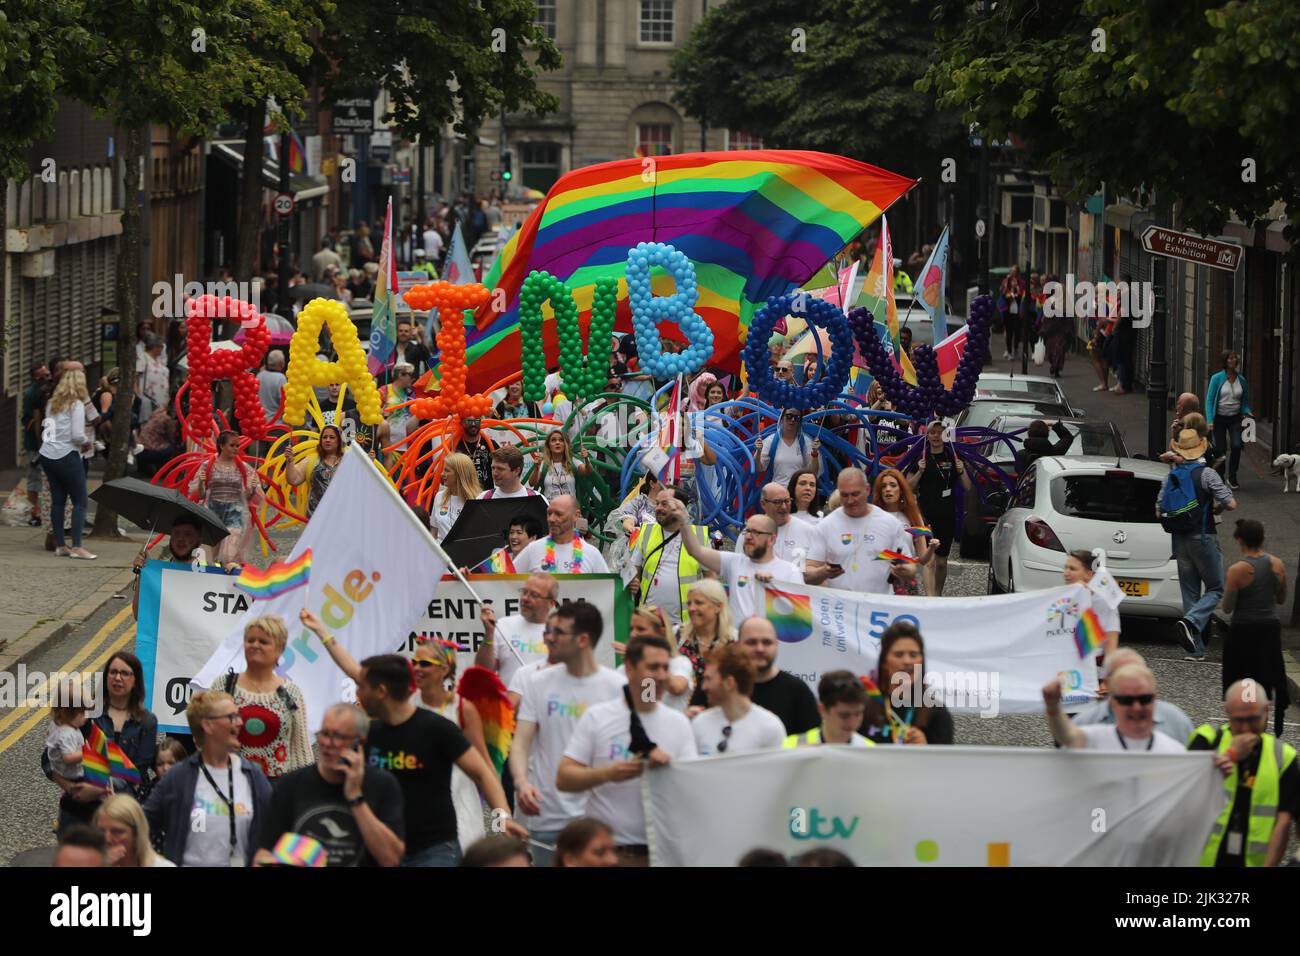 Foto de archivo de fecha 03/08/19 de multitudes observando la marcha de la gente en el desfile del Orgullo de Belfast, como el desfile del Orgullo de Belfast regresa a la ciudad el sábado, con los organizadores prometiendo el más grande que la ciudad ha visto jamás. Foto de stock